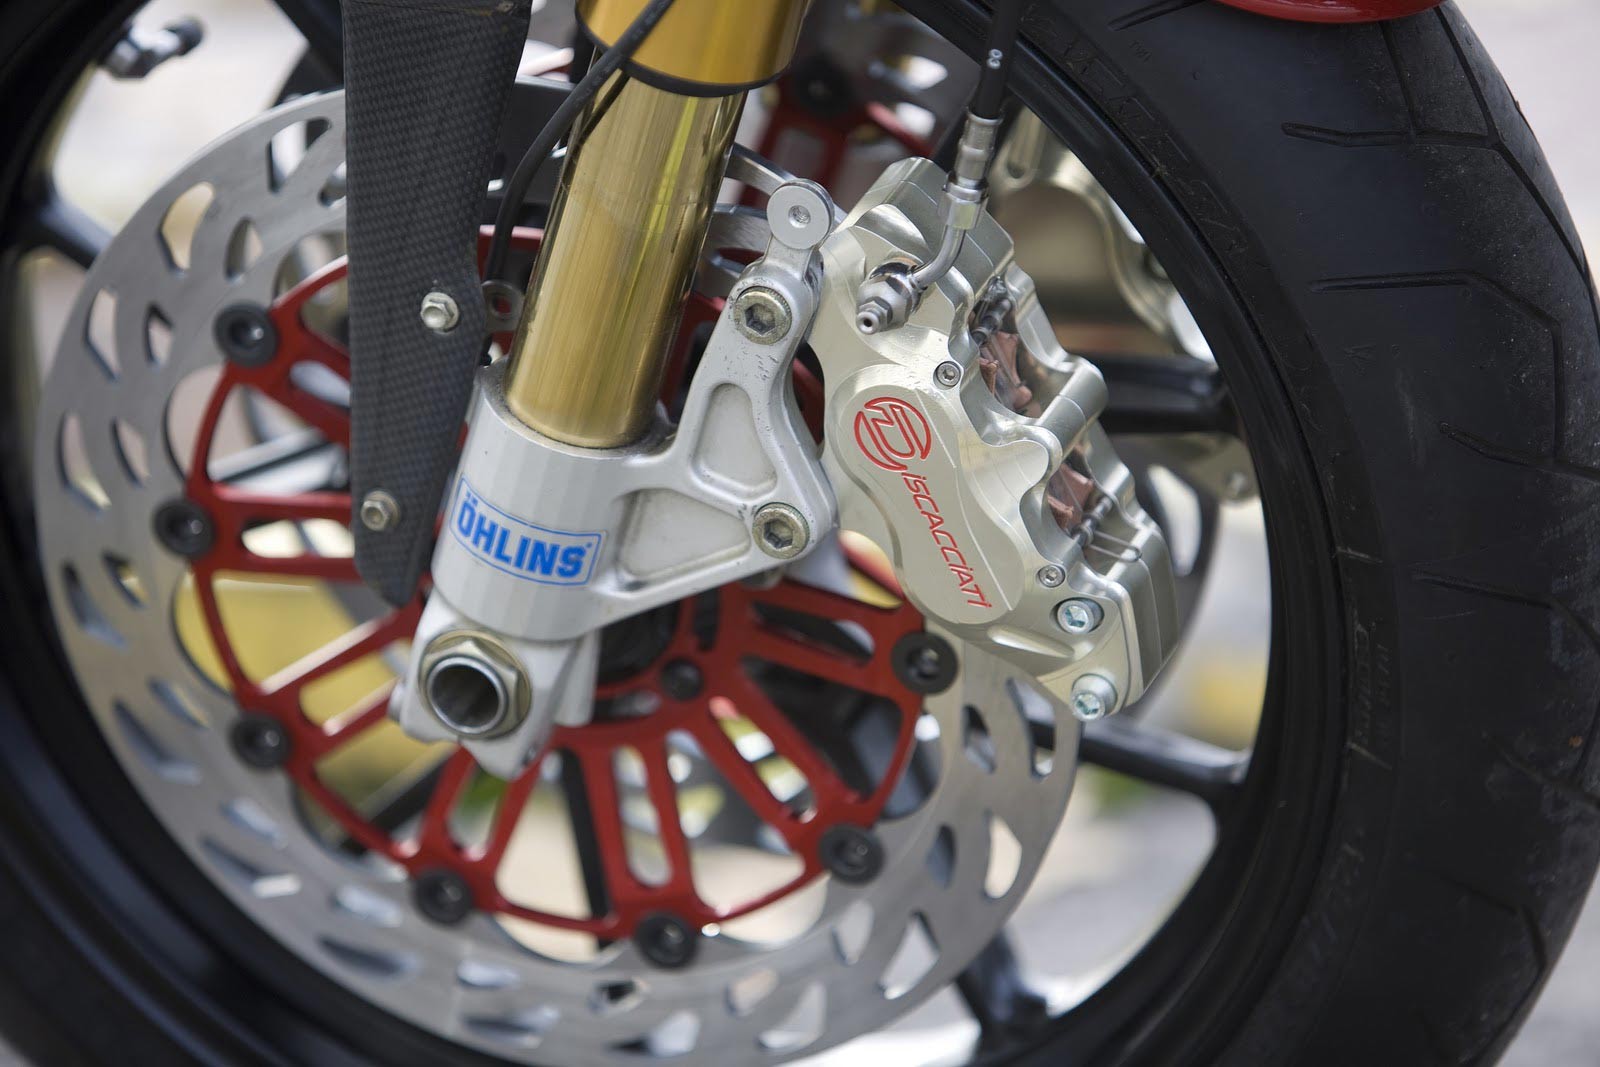 General 1600x1067 Ducati motorcycle Italian motorcycles Volkswagen Group closeup wheels brakes